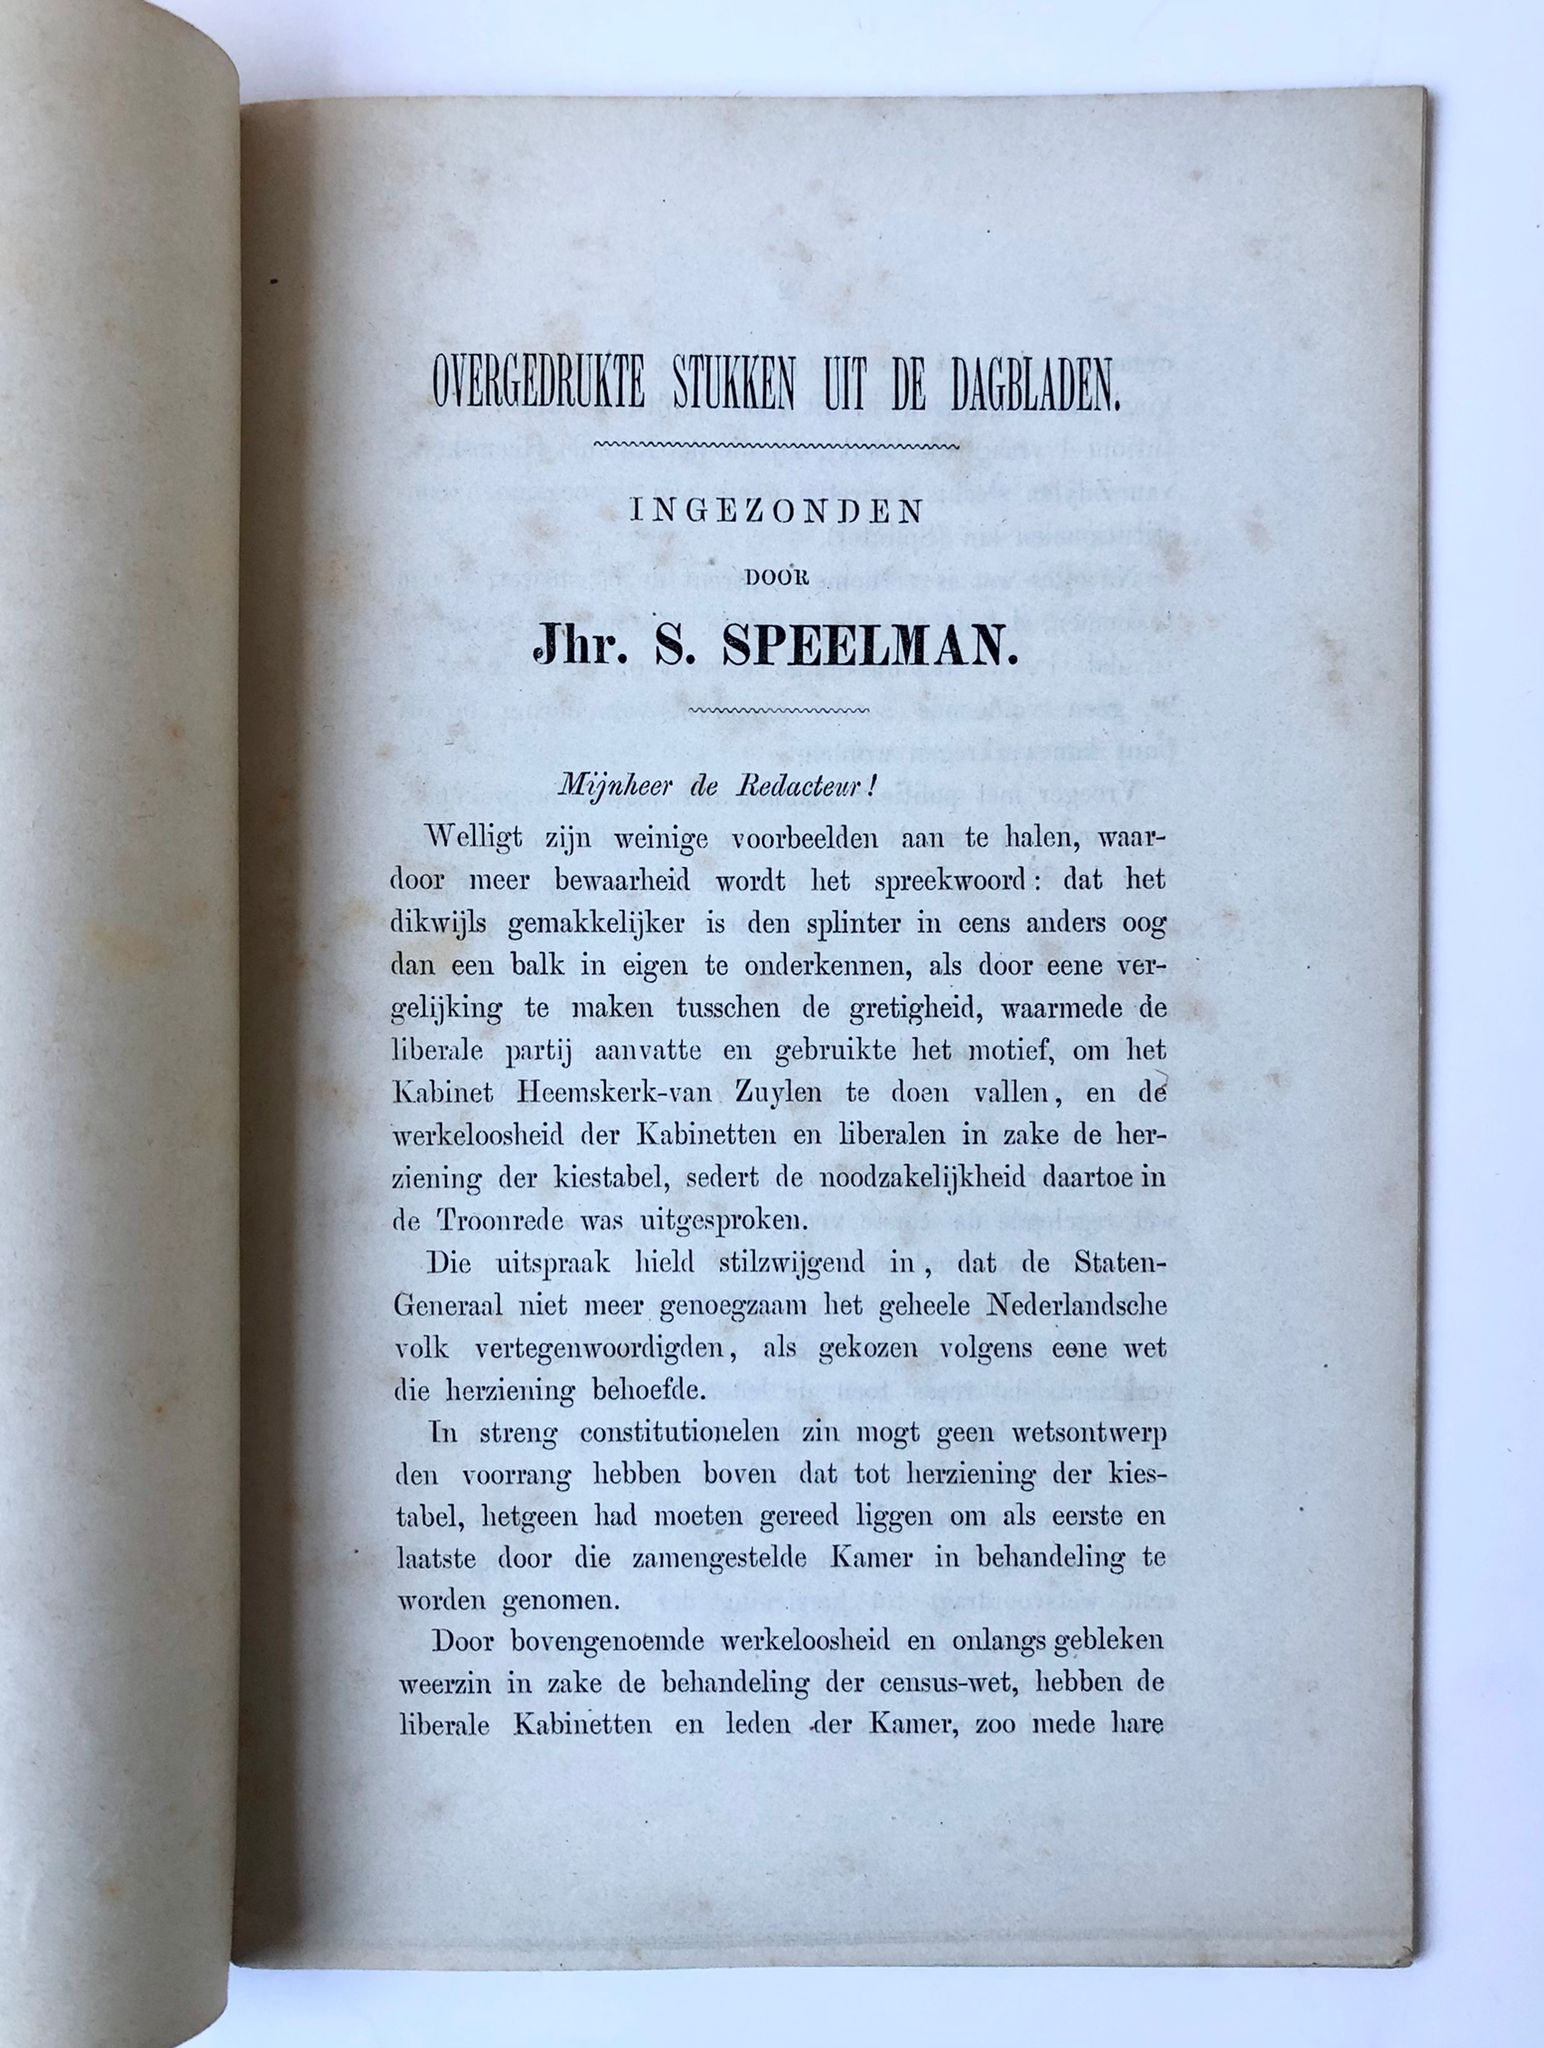  - [Political history, Speelman] Overgedrukte stukken uit de dagbladen, ingezonden door jhr. S. Speelman. Bundeltje ingezonden brieven, 1873-1878, 32 pag., gedrukt.